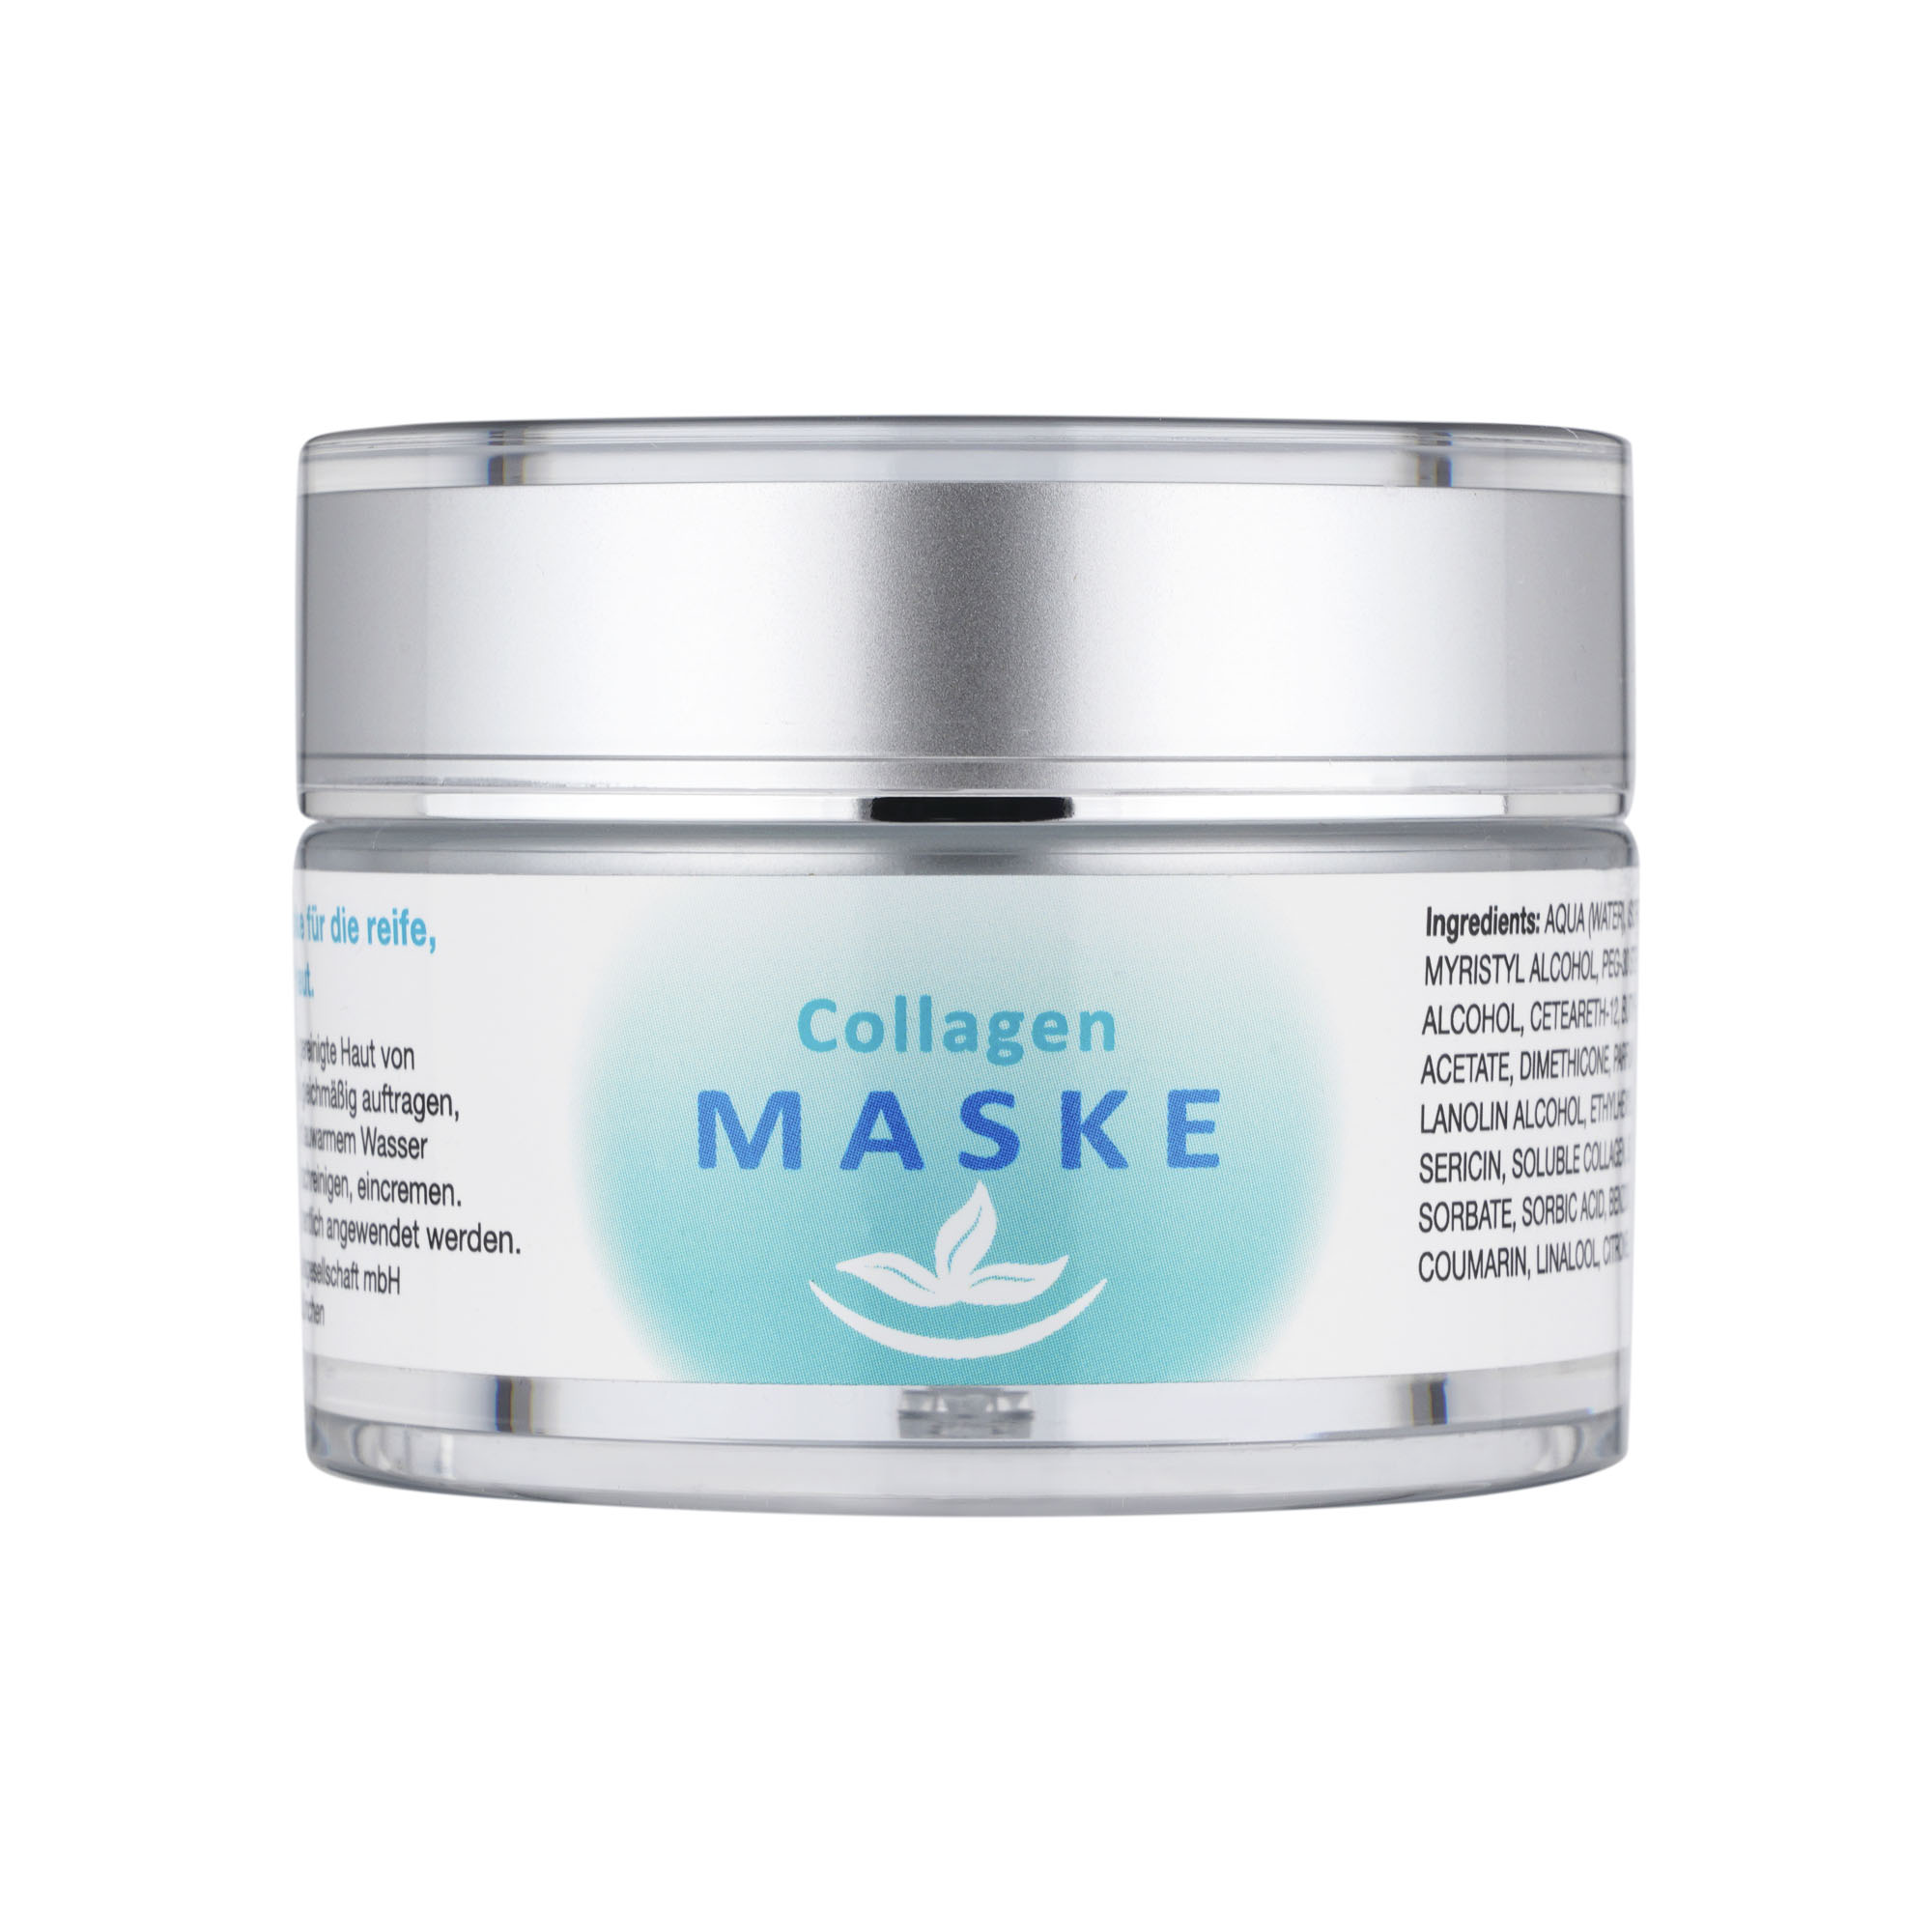 Collagen Maske